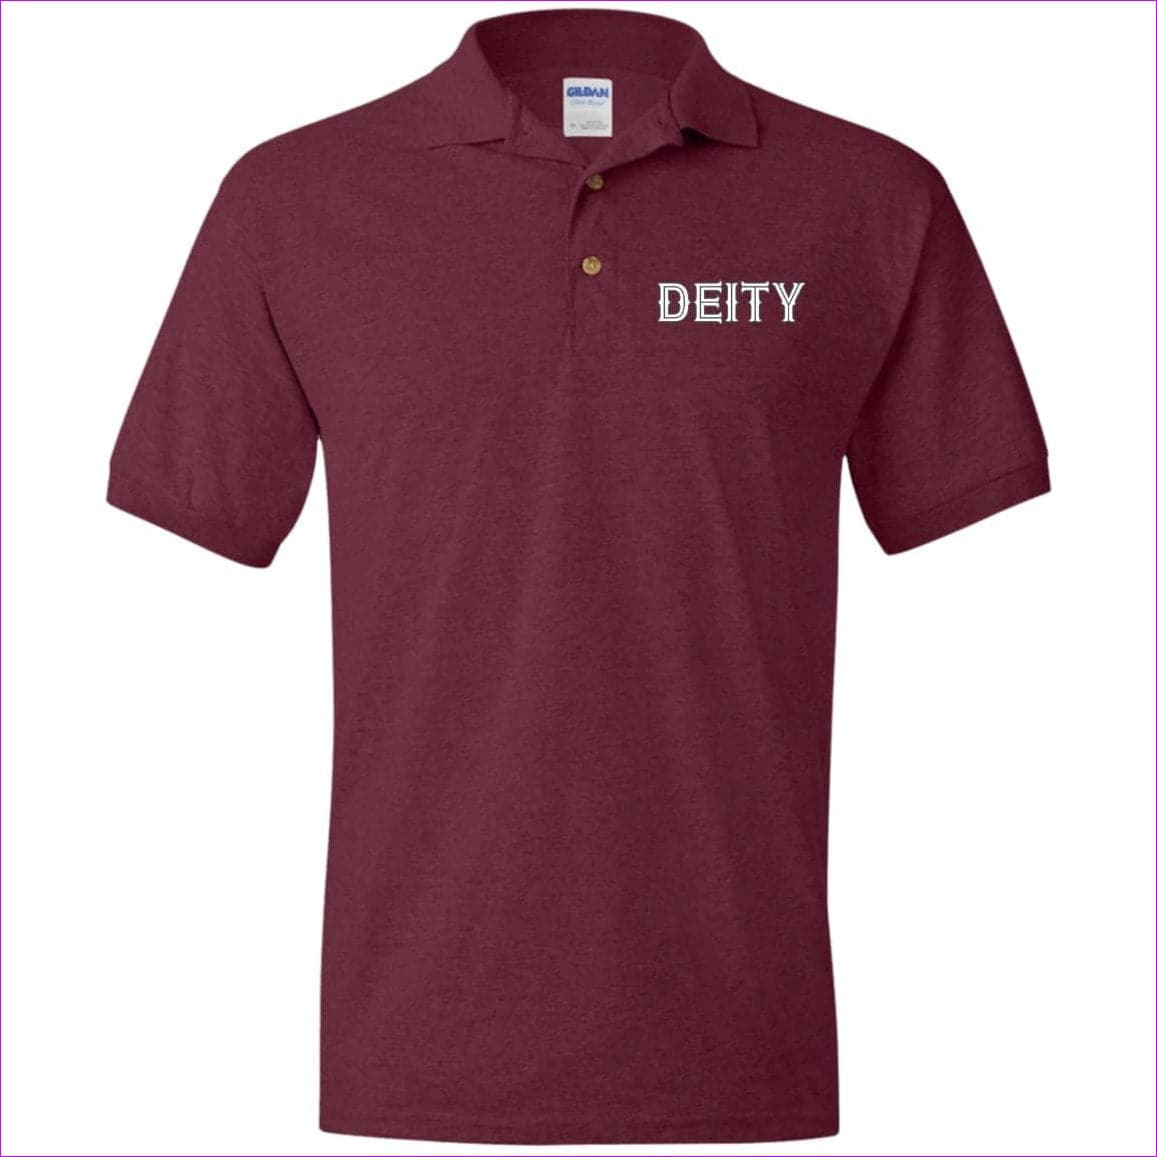 Maroon - Deity Men's Jersey Polo Shirt - Mens Polo Shirts at TFC&H Co.